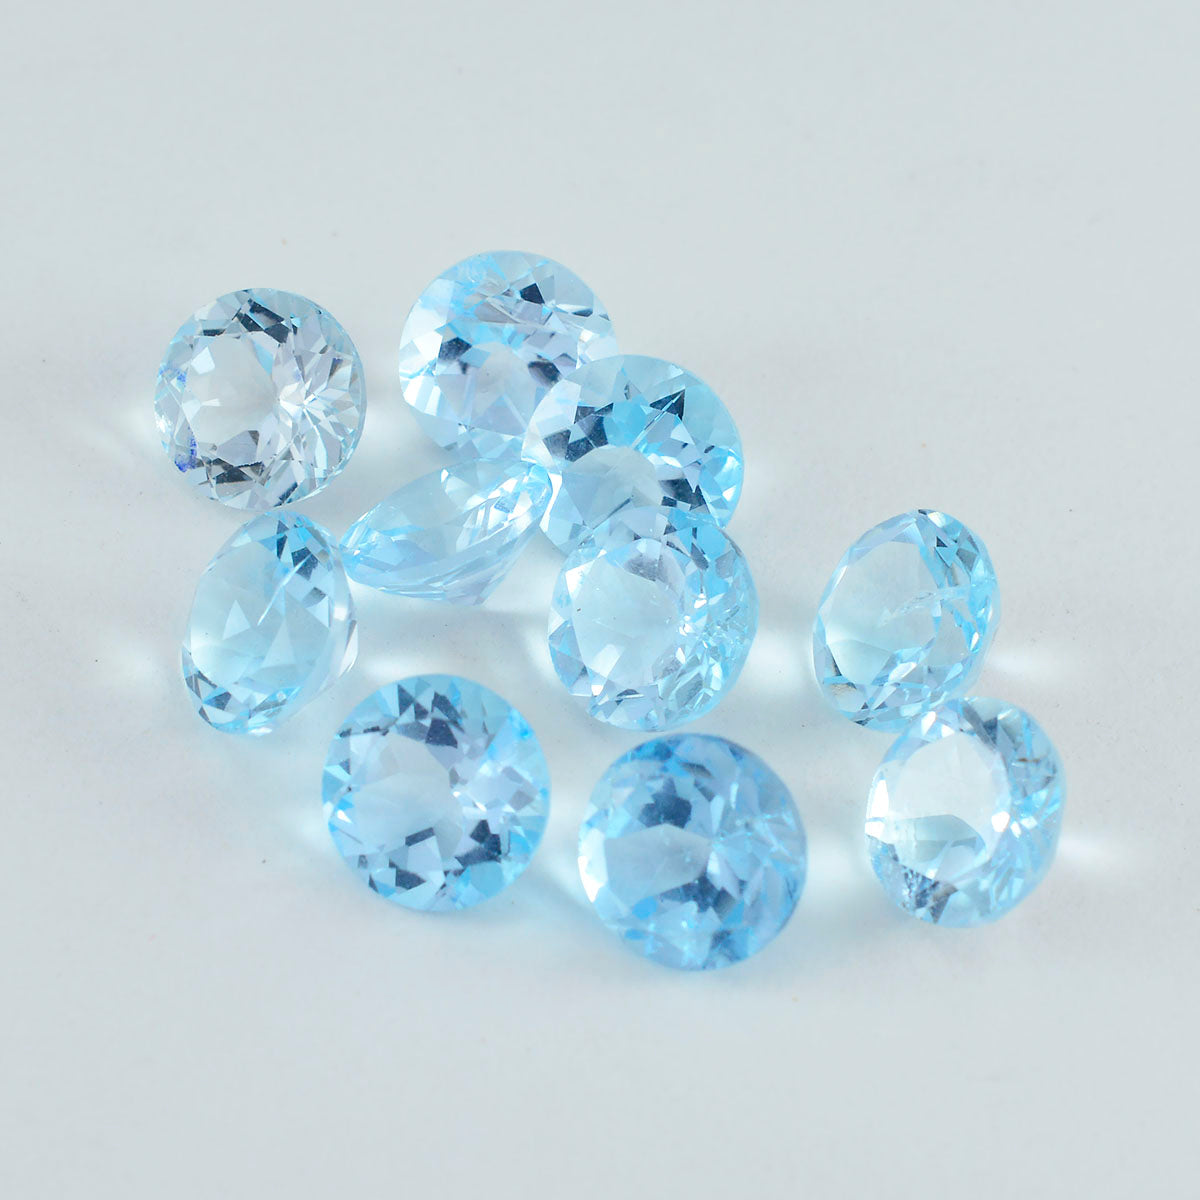 Riyogems 1 pièce de topaze bleue naturelle à facettes 4x4mm, forme ronde, pierres précieuses en vrac de qualité douce